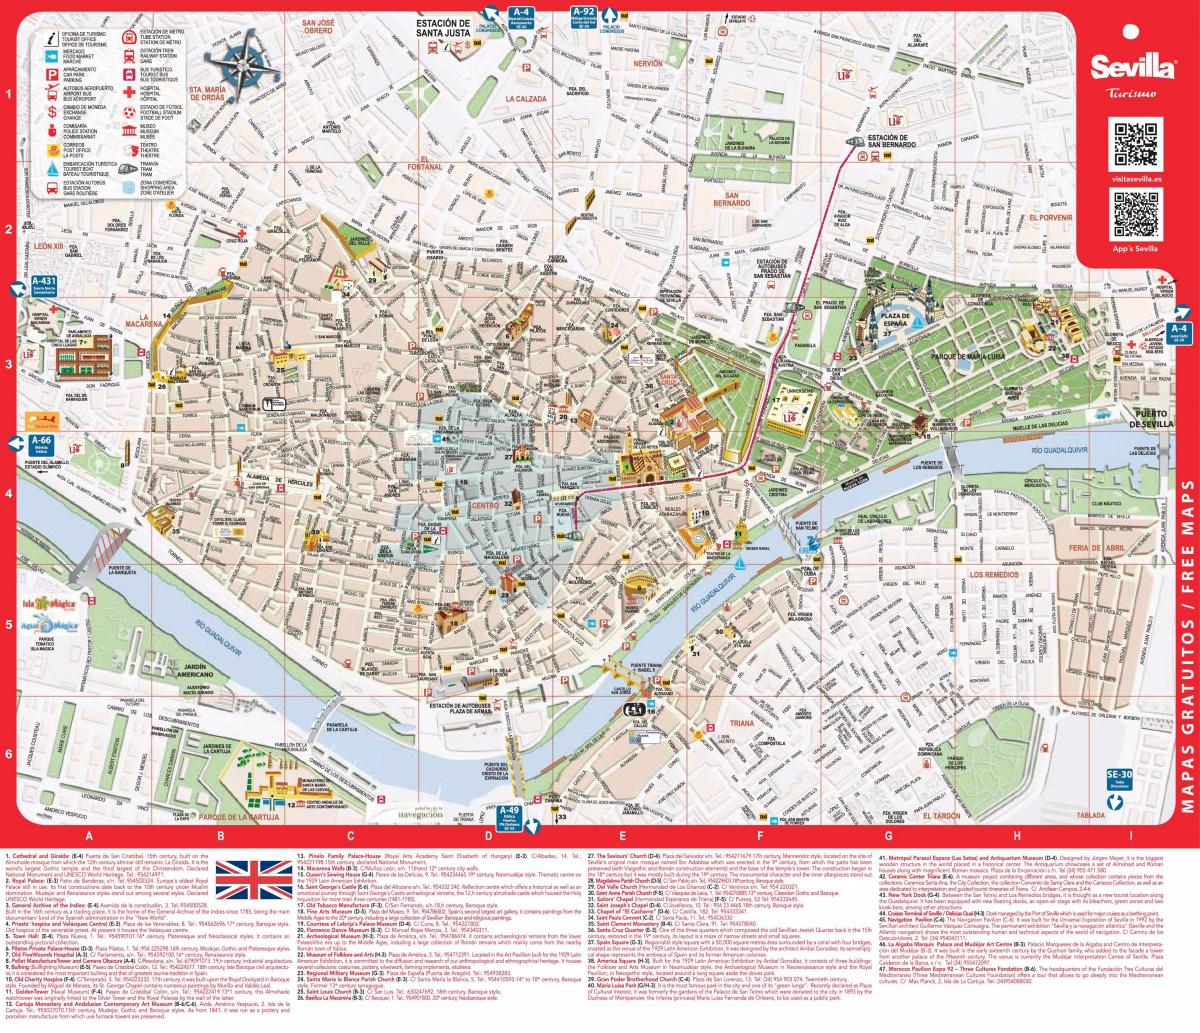 Sevilla-stadsplattegrond